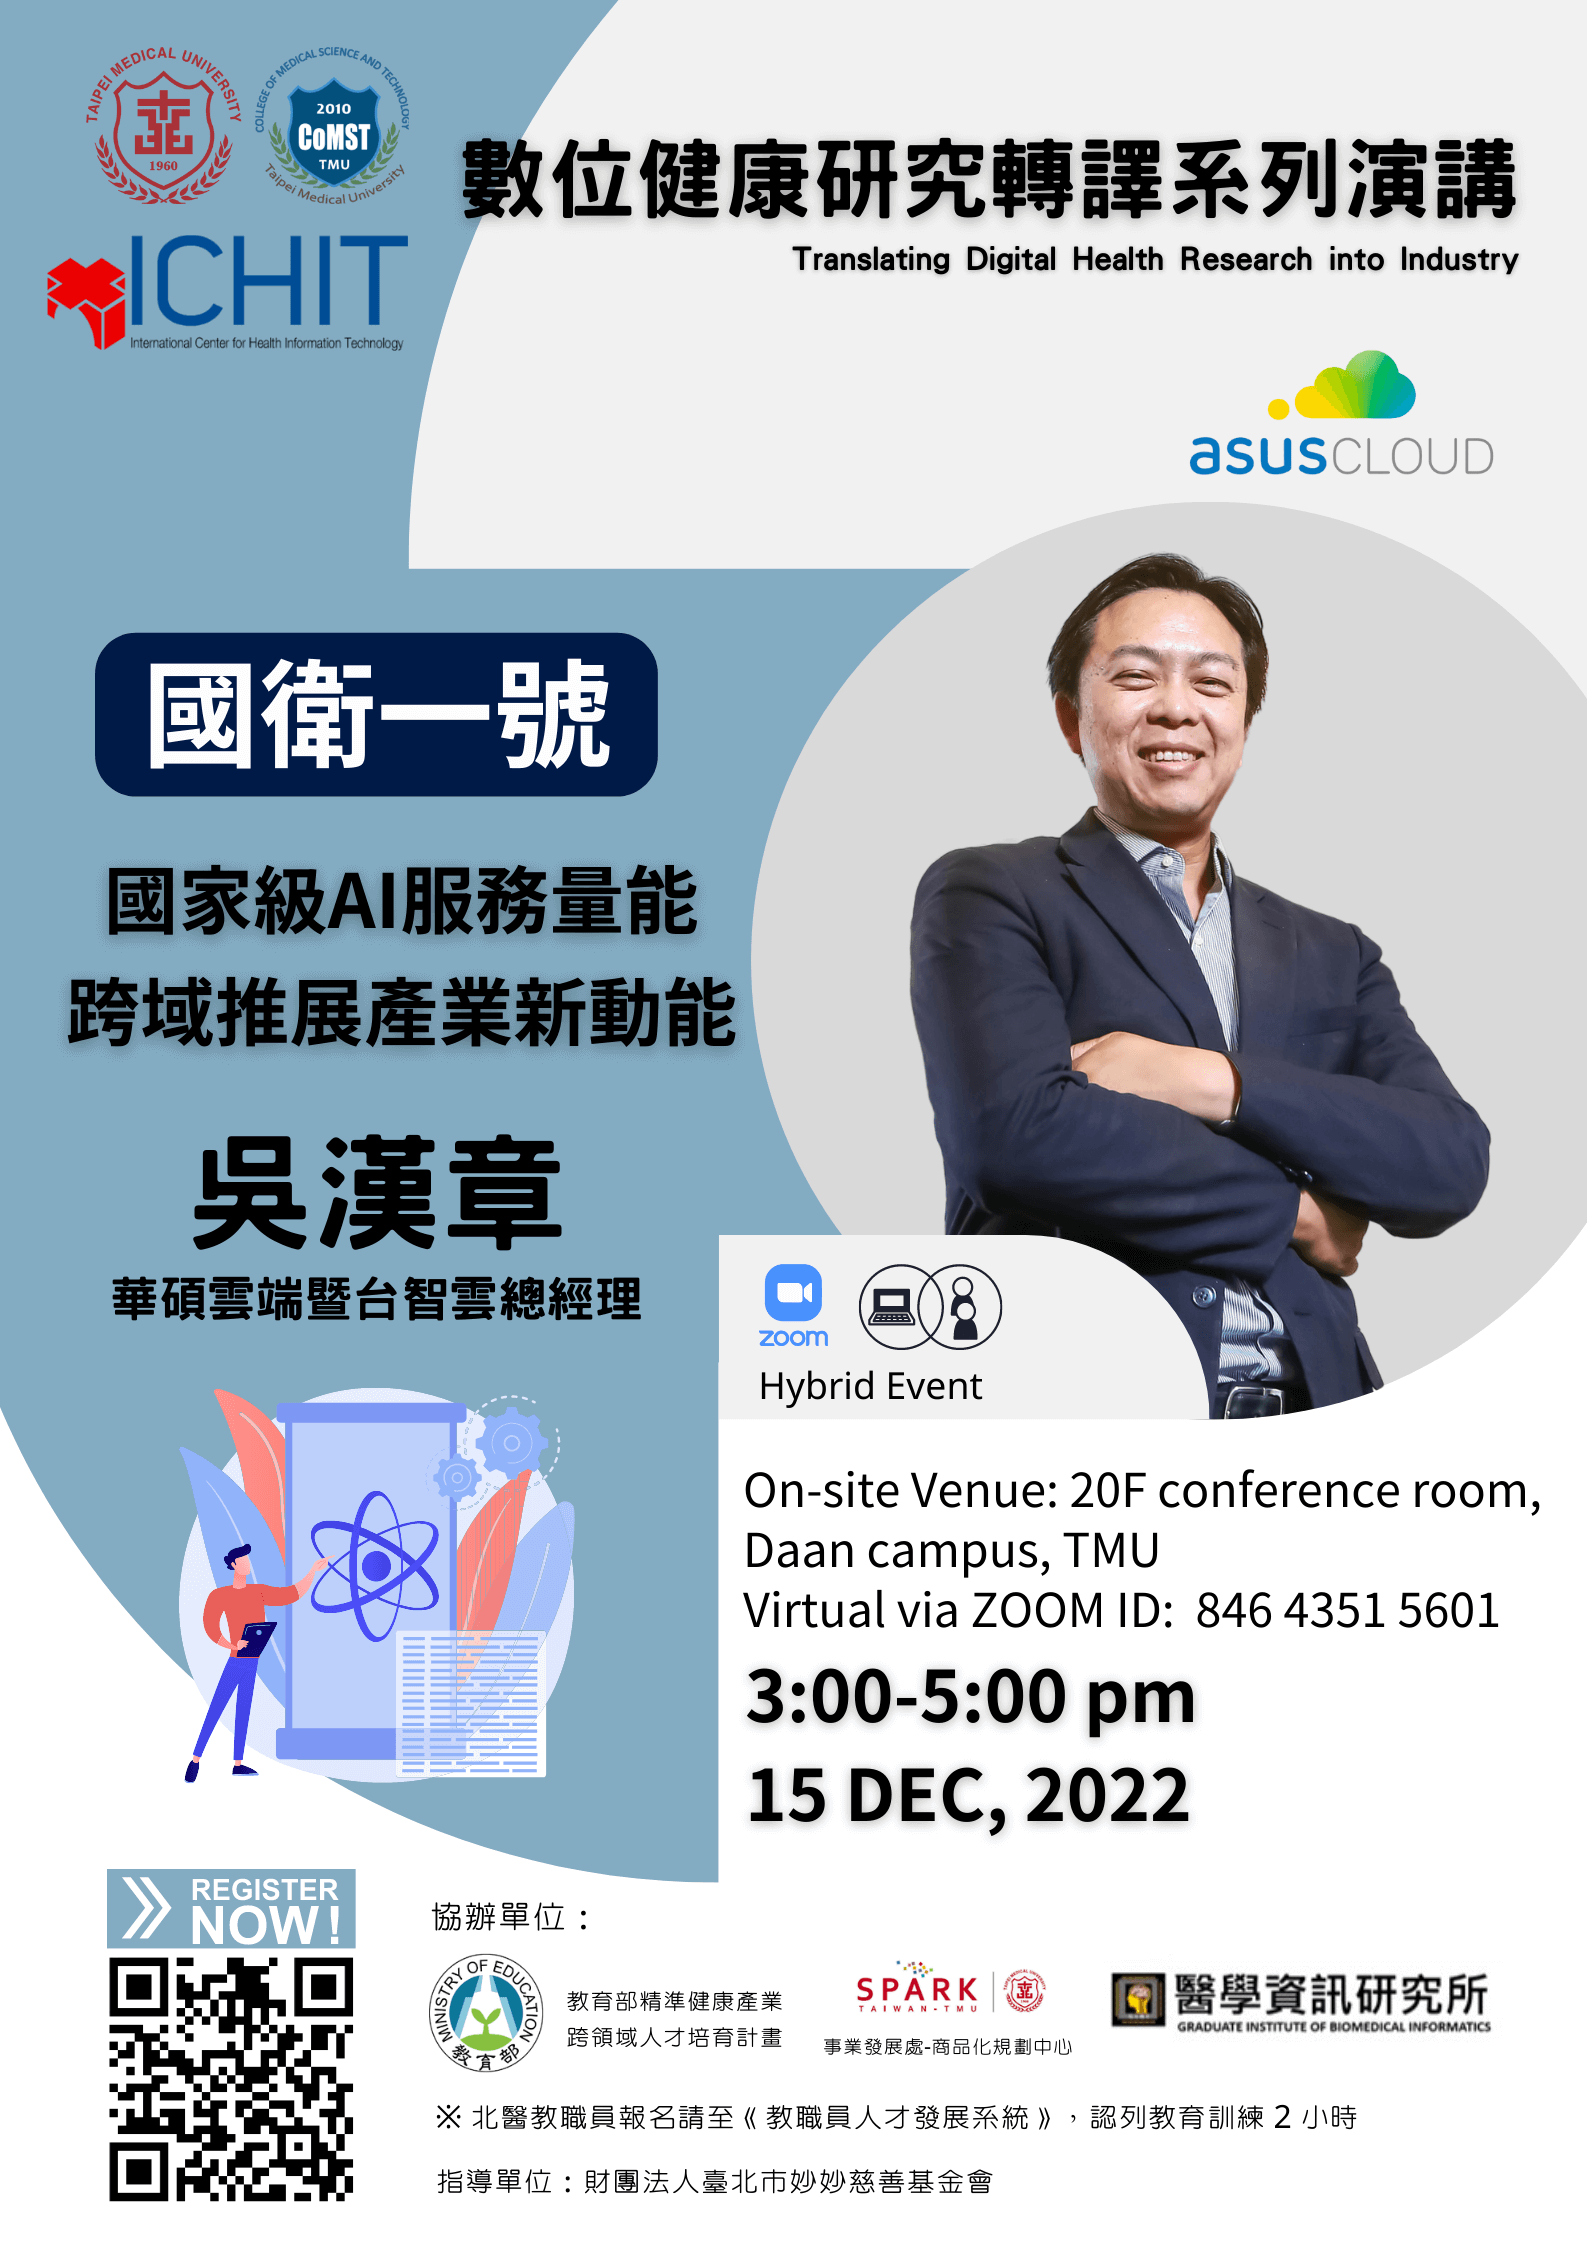 本場講座講邀請到 台灣AI生醫加速器 華碩雲端 ASUS Cloud 吳漢章(Peter Wu) 總經理 分享「 國衛一號 - 國家級AI服務量能、跨域推展產業新動能」。